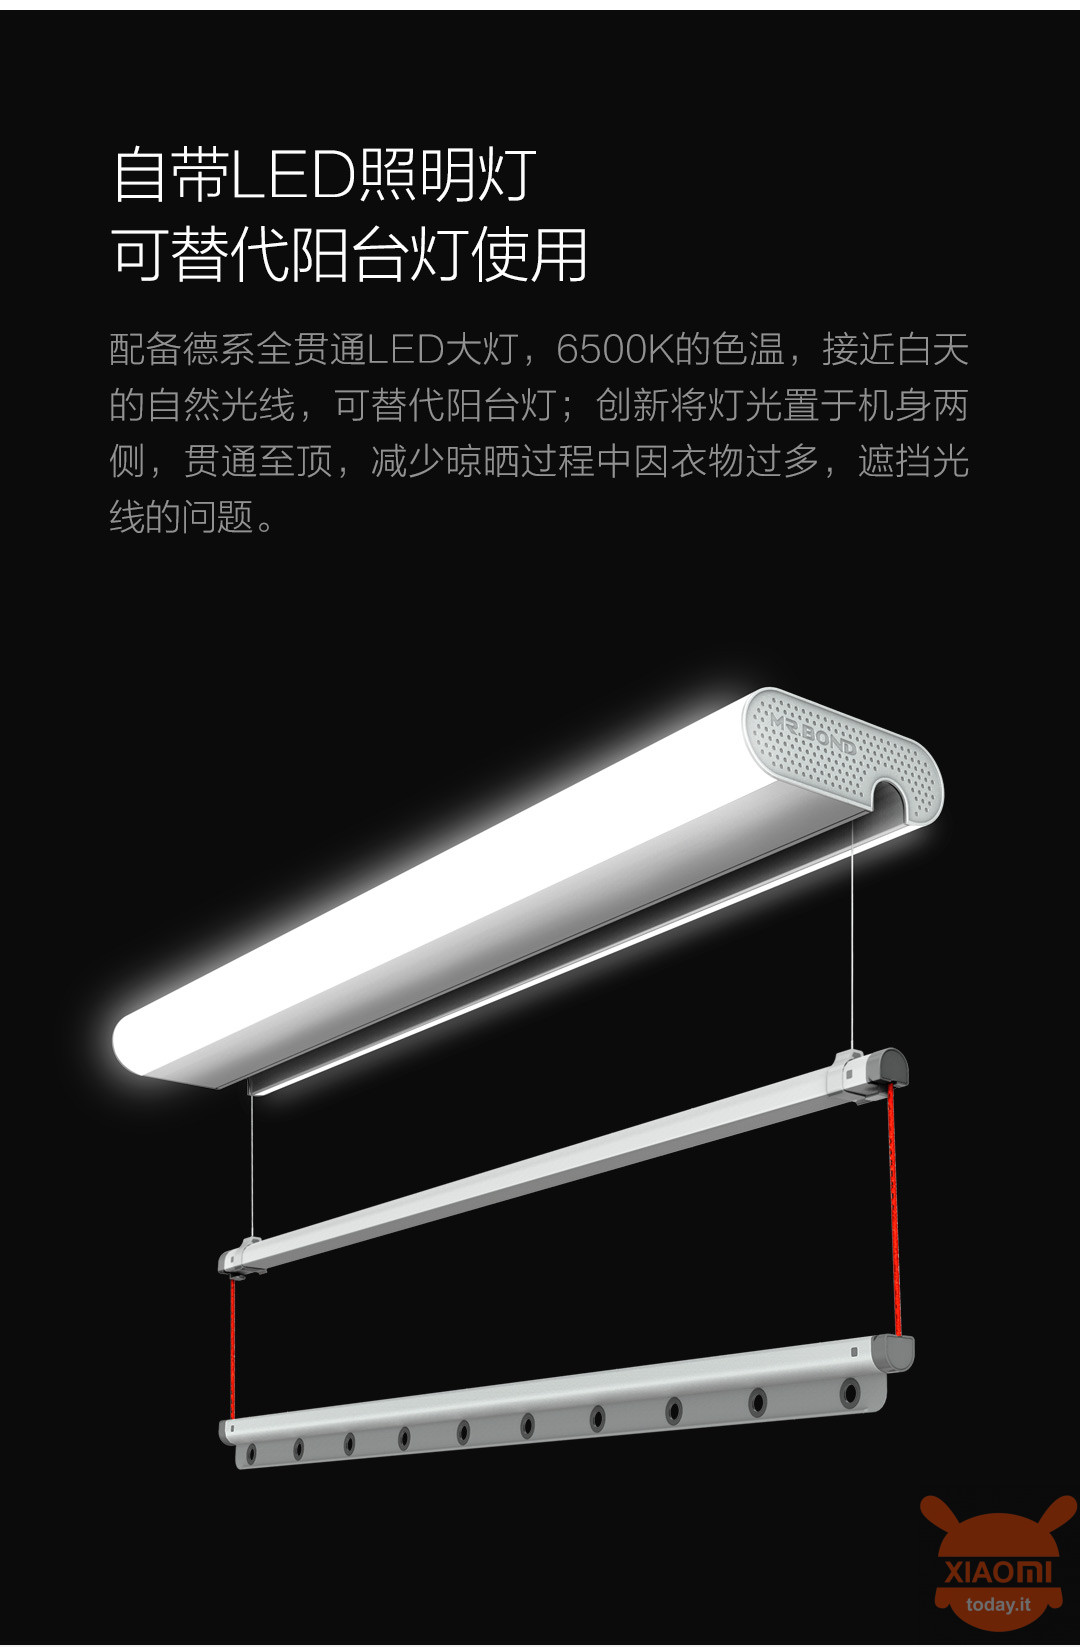 finalmente producido el tendedero inteligente! | XiaomiToday.it